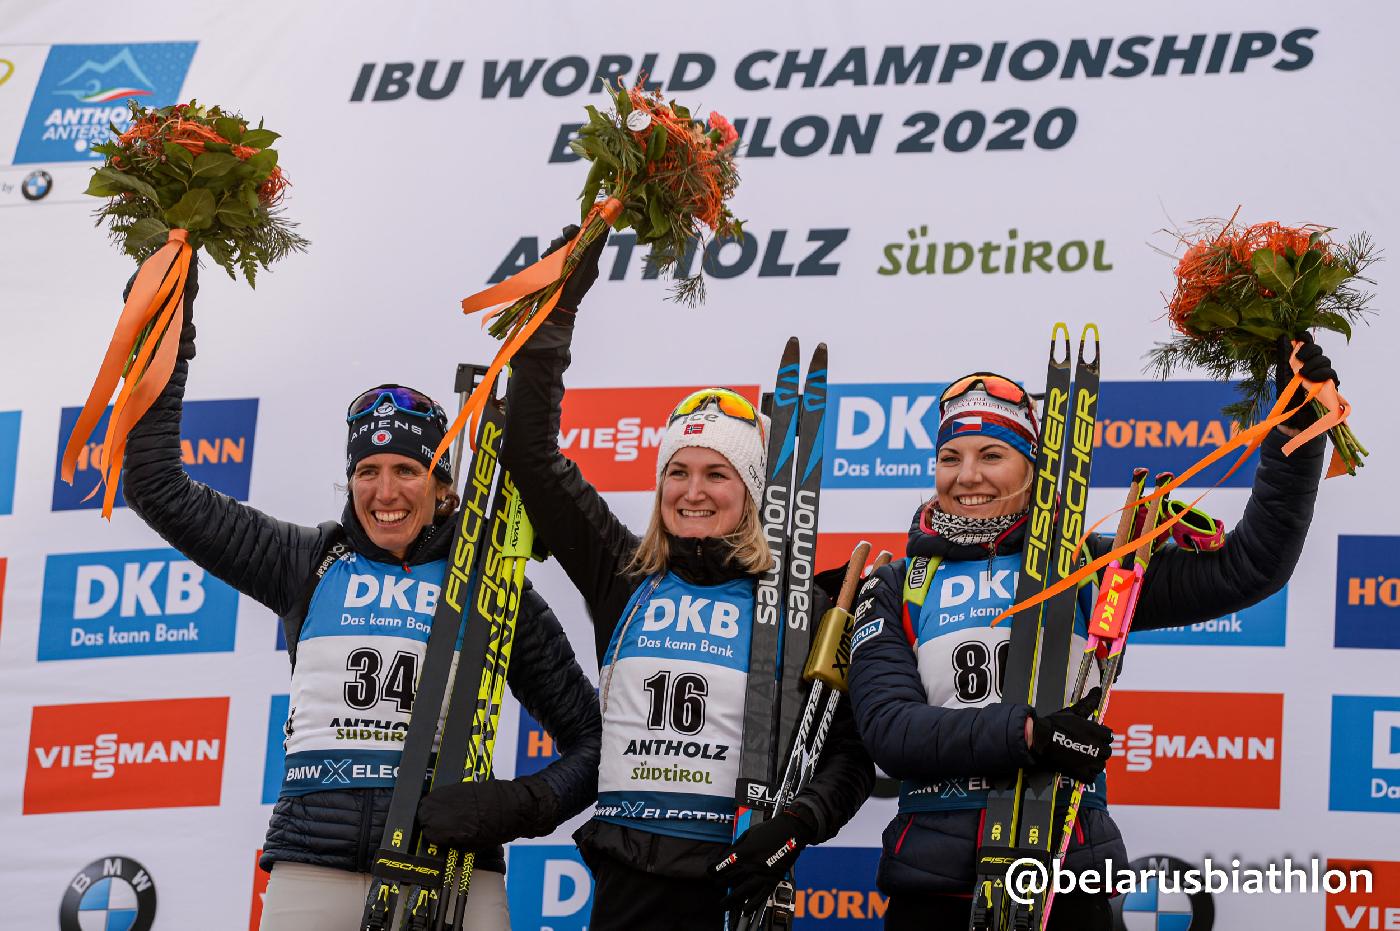 Норвежская биатлонистка Марте Рёйселанн выиграла золотую медаль чемпионата мира